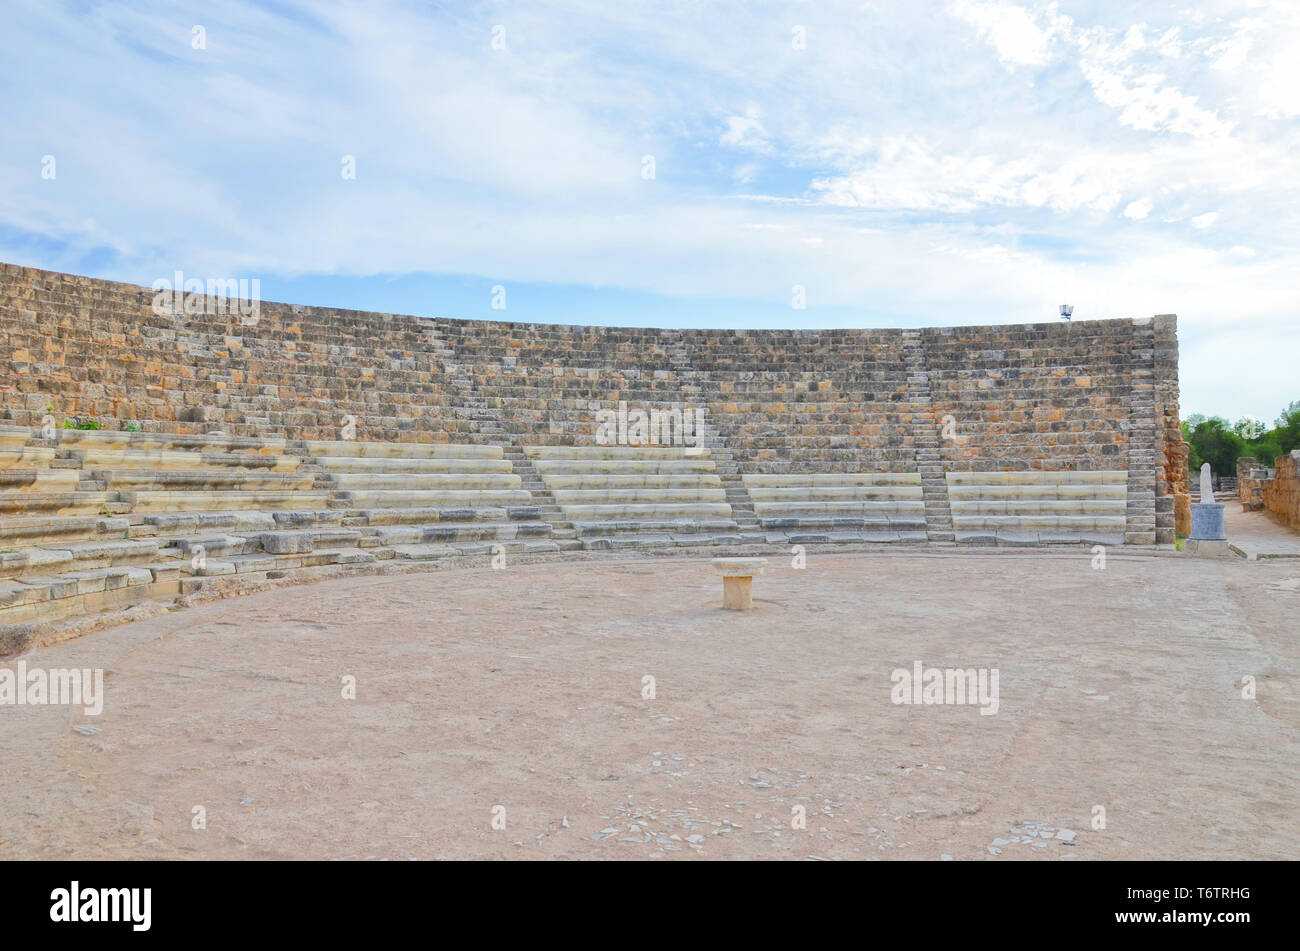 Bien préservé ruines de Salamis ancien théâtre près de Famagouste, dans le nord de Chypre. Stone tribuns du théâtre en plein air pris avec ciel nuageux au-dessus. Avec la vue historique, attraction populaire. Banque D'Images